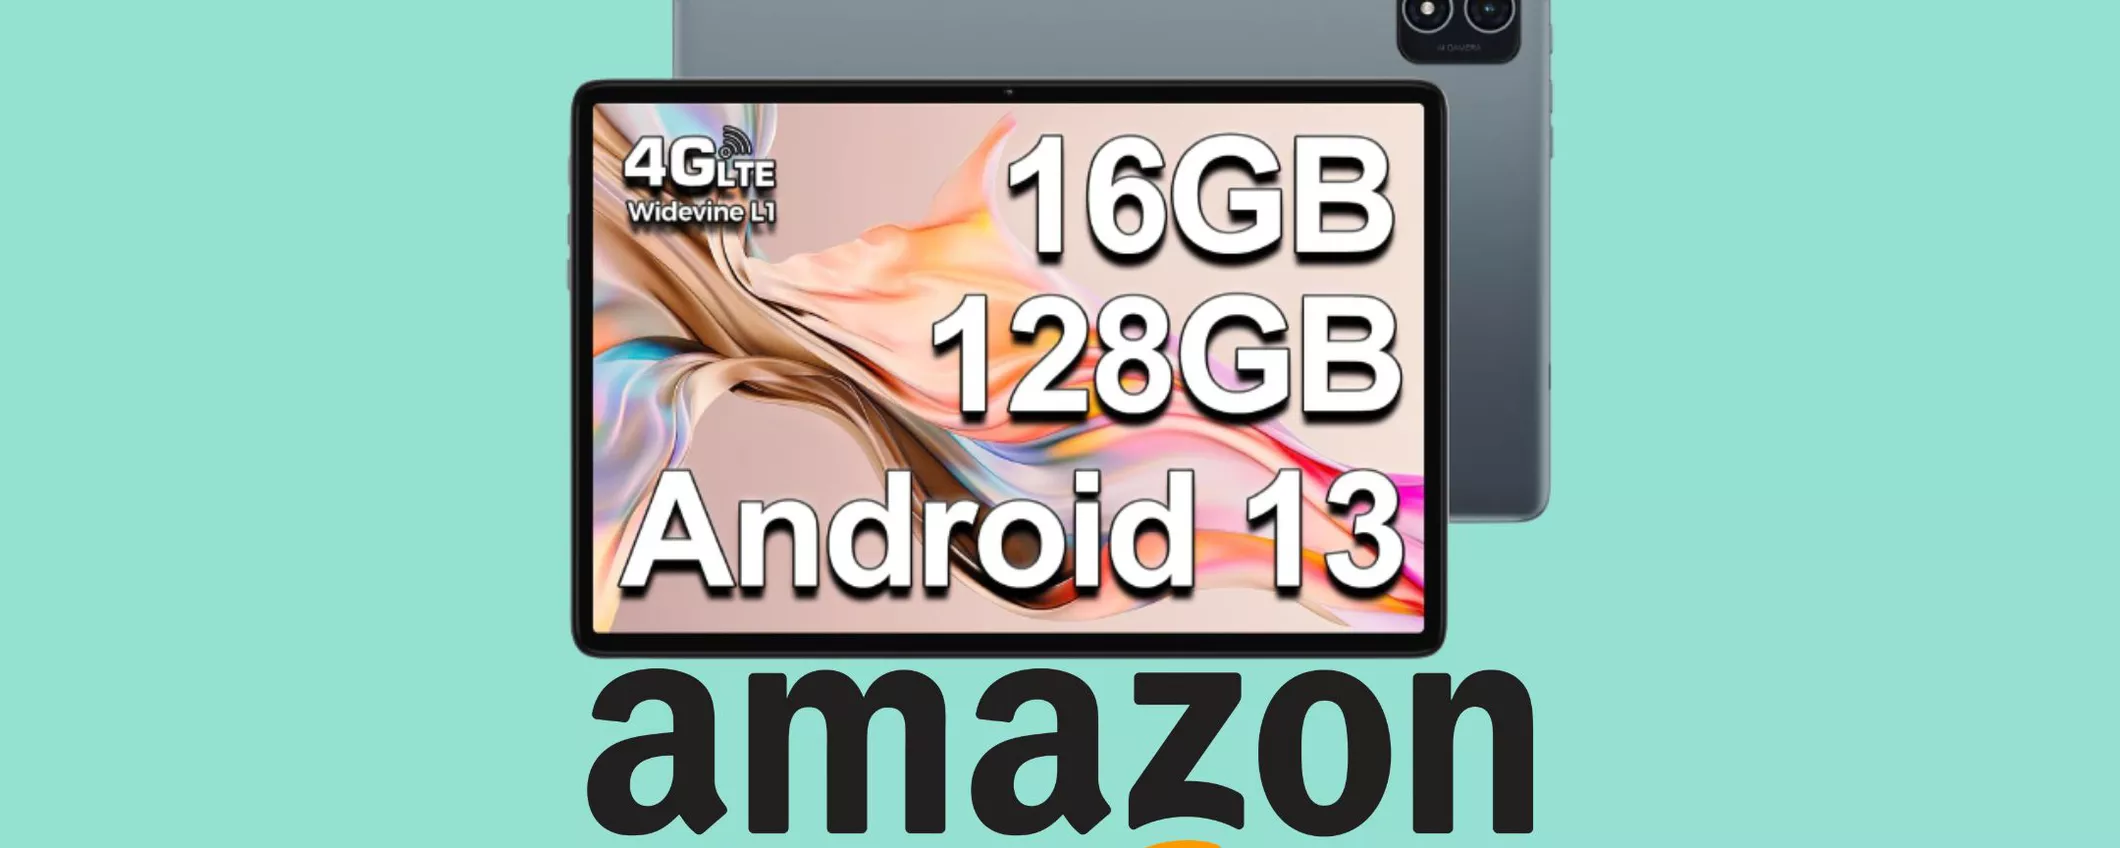 Il Tablet con Android 13 PIU' VENDUTO su Amazon a MINI PREZZO